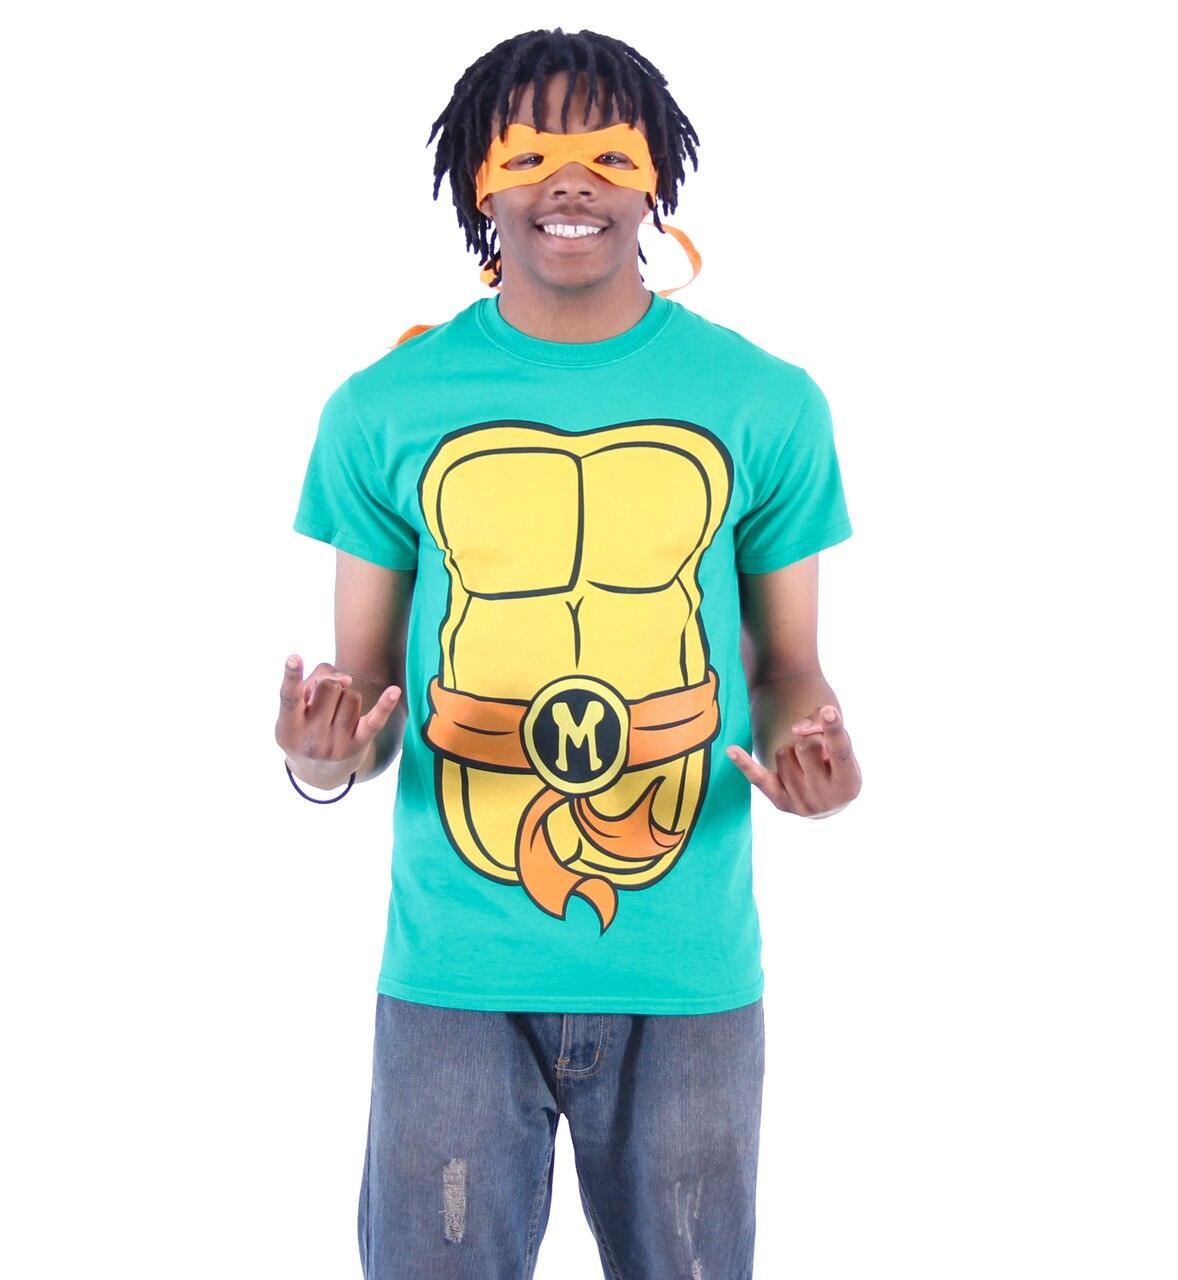 Teenage Mutant Ninja Turtles Shell Adult Short Sleeve T-Shirt